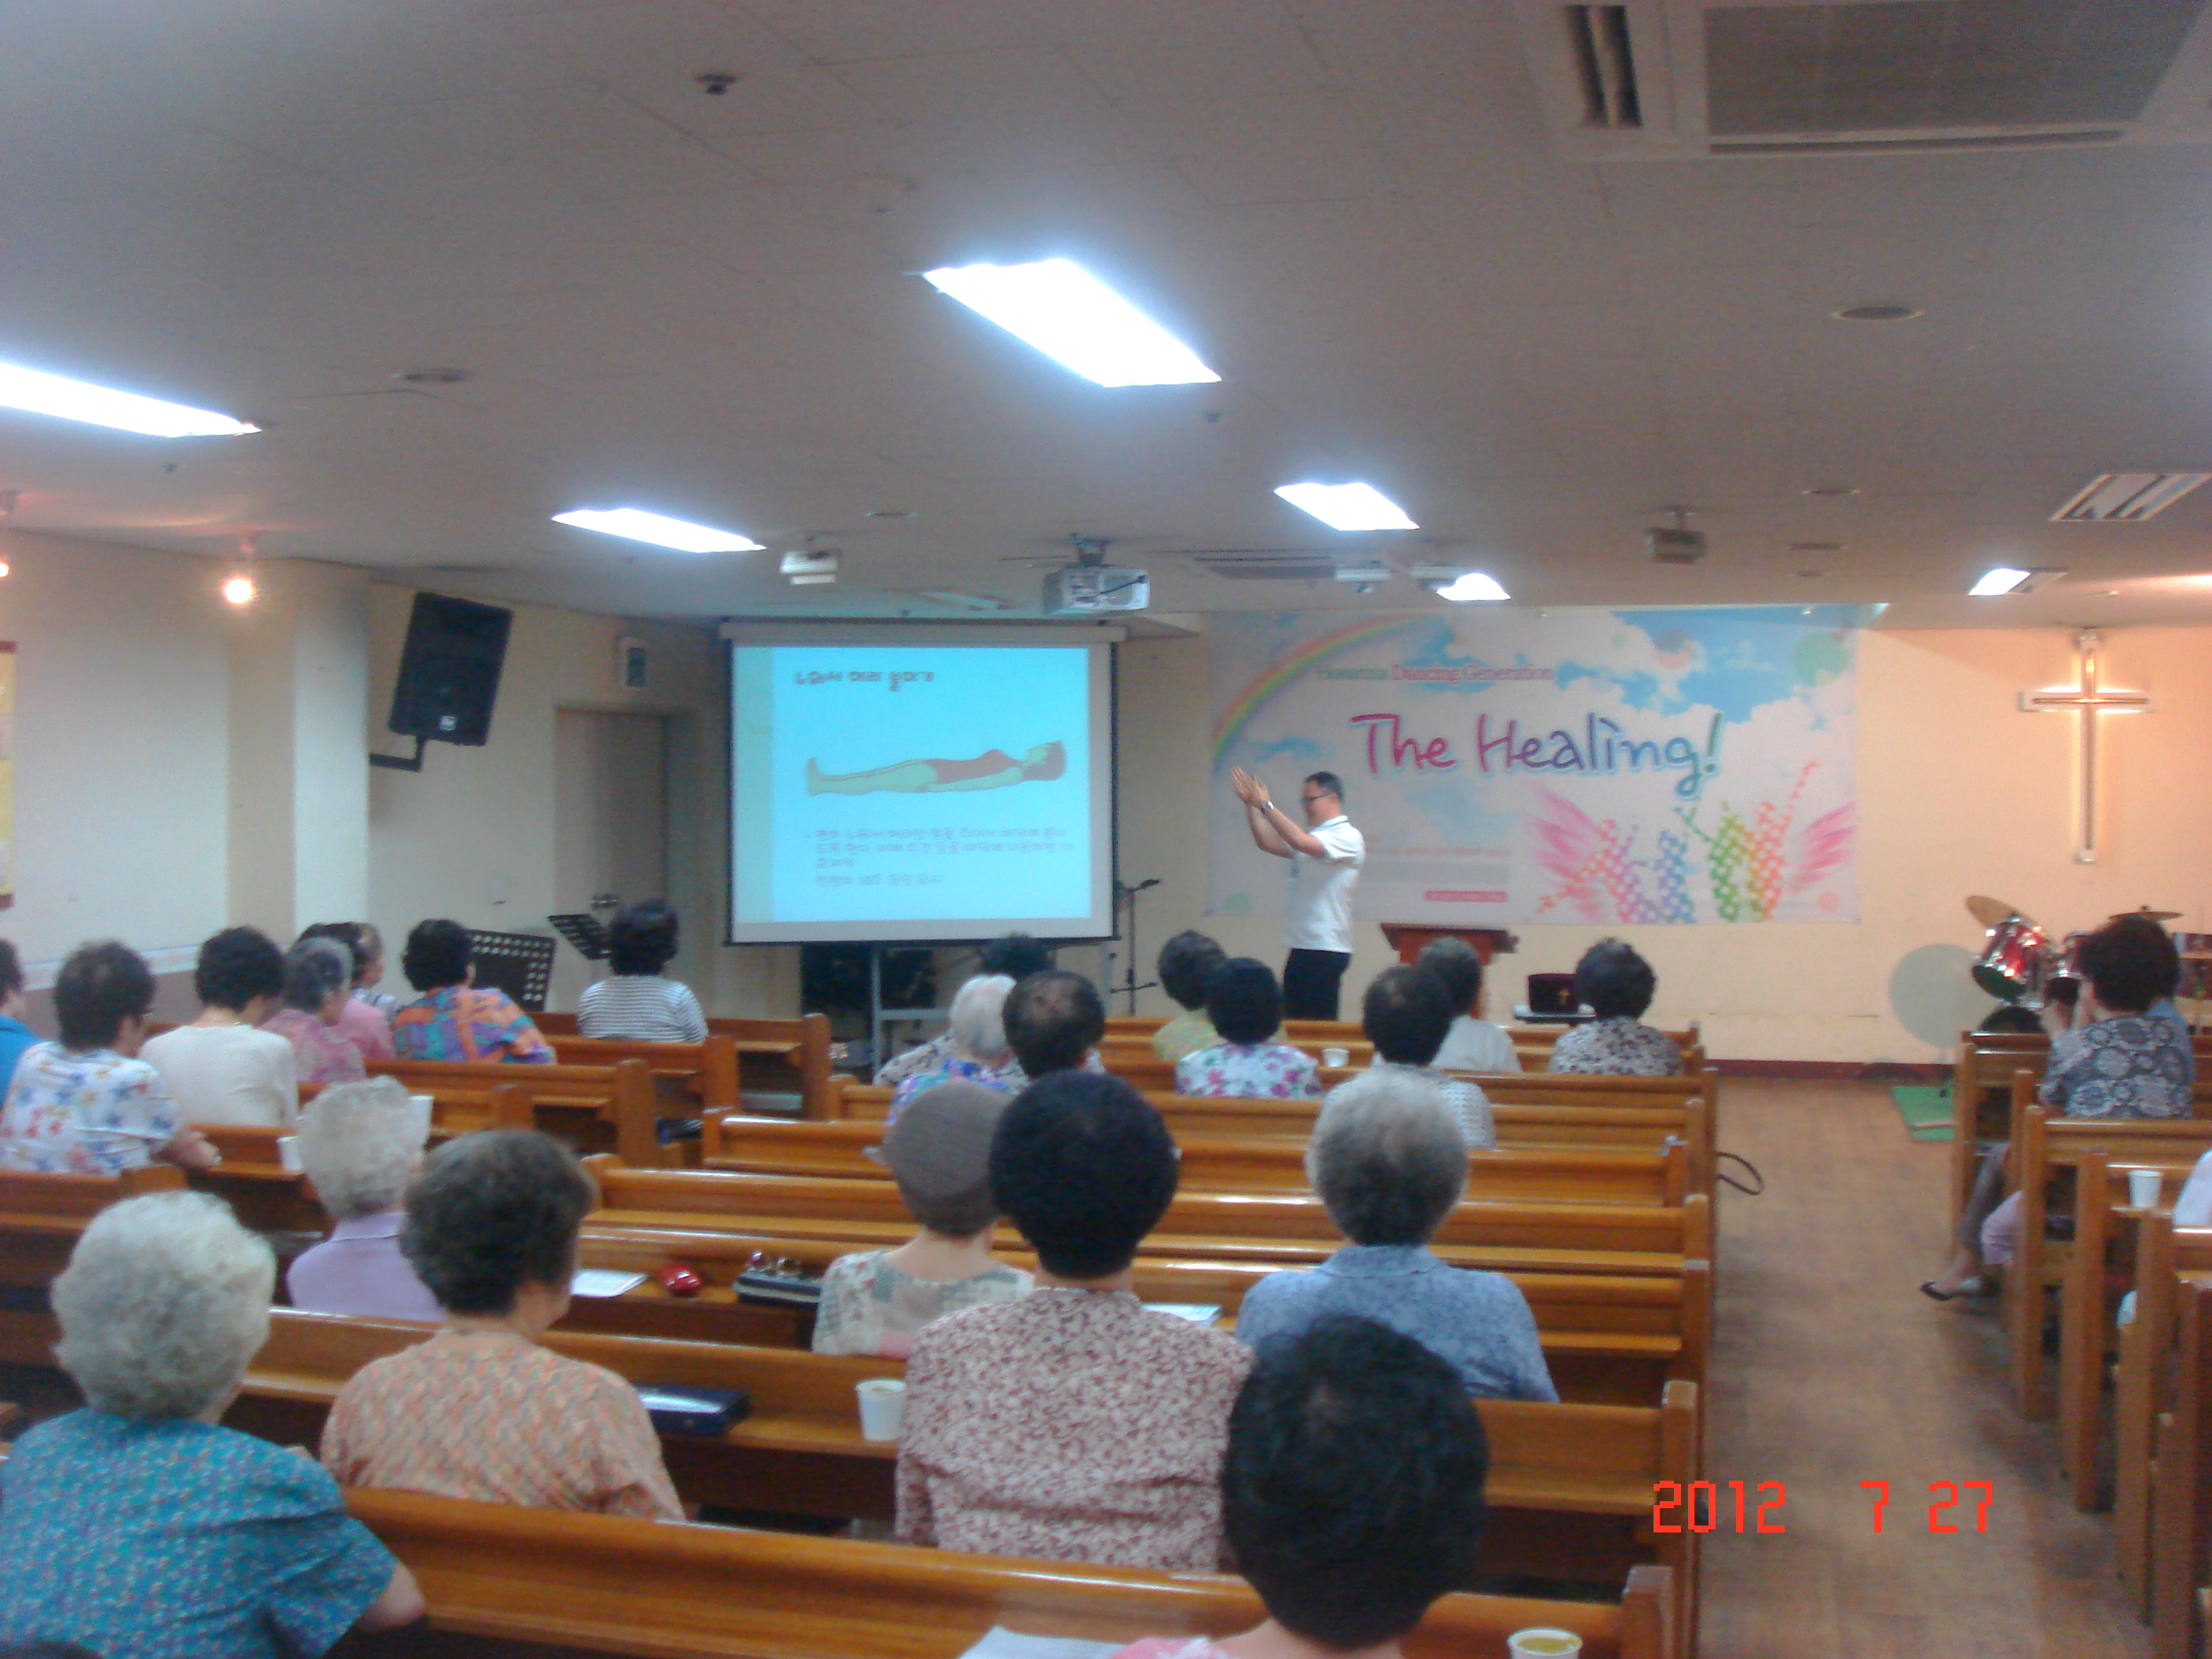 2012년 7월 27일 - 호산나교회 의료봉사 게시글의 5번째 첨부파일입니다.